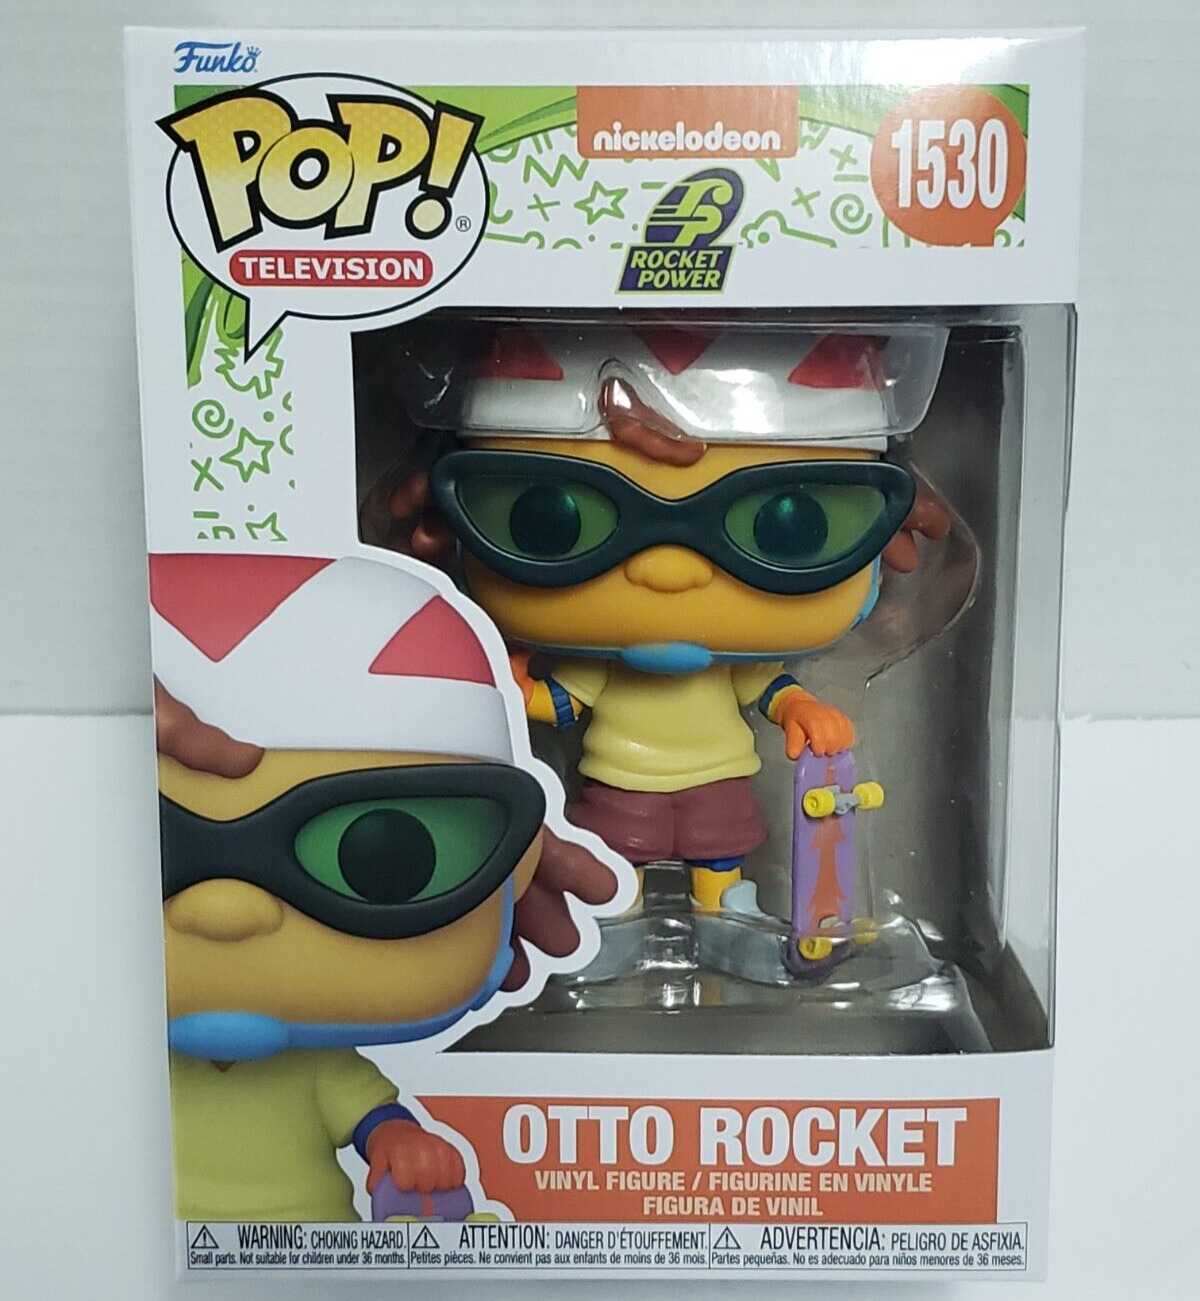 OTTO ROCKET - Nickelodeon Rocket Power Funko POP TV #1530 Vinyl Figure IN STOCK